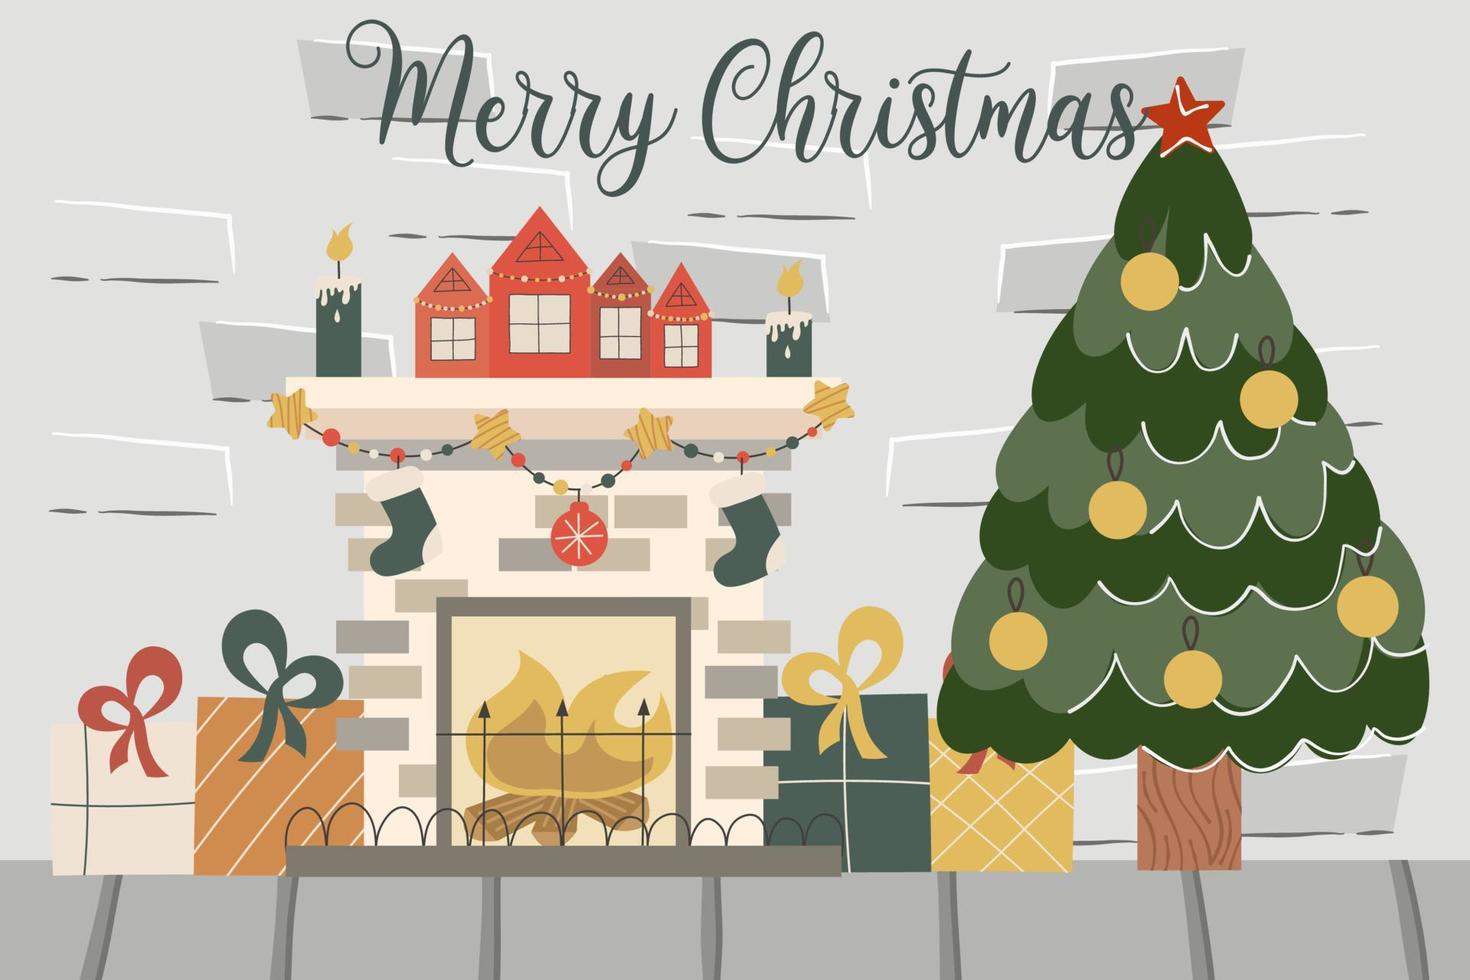 loft de tijolos de natal com lareira, árvore do abeto, texto feliz natal.decorado com bolas de abeto e velas de lareira e presentes. ilustração em vetor de um interior festivo.